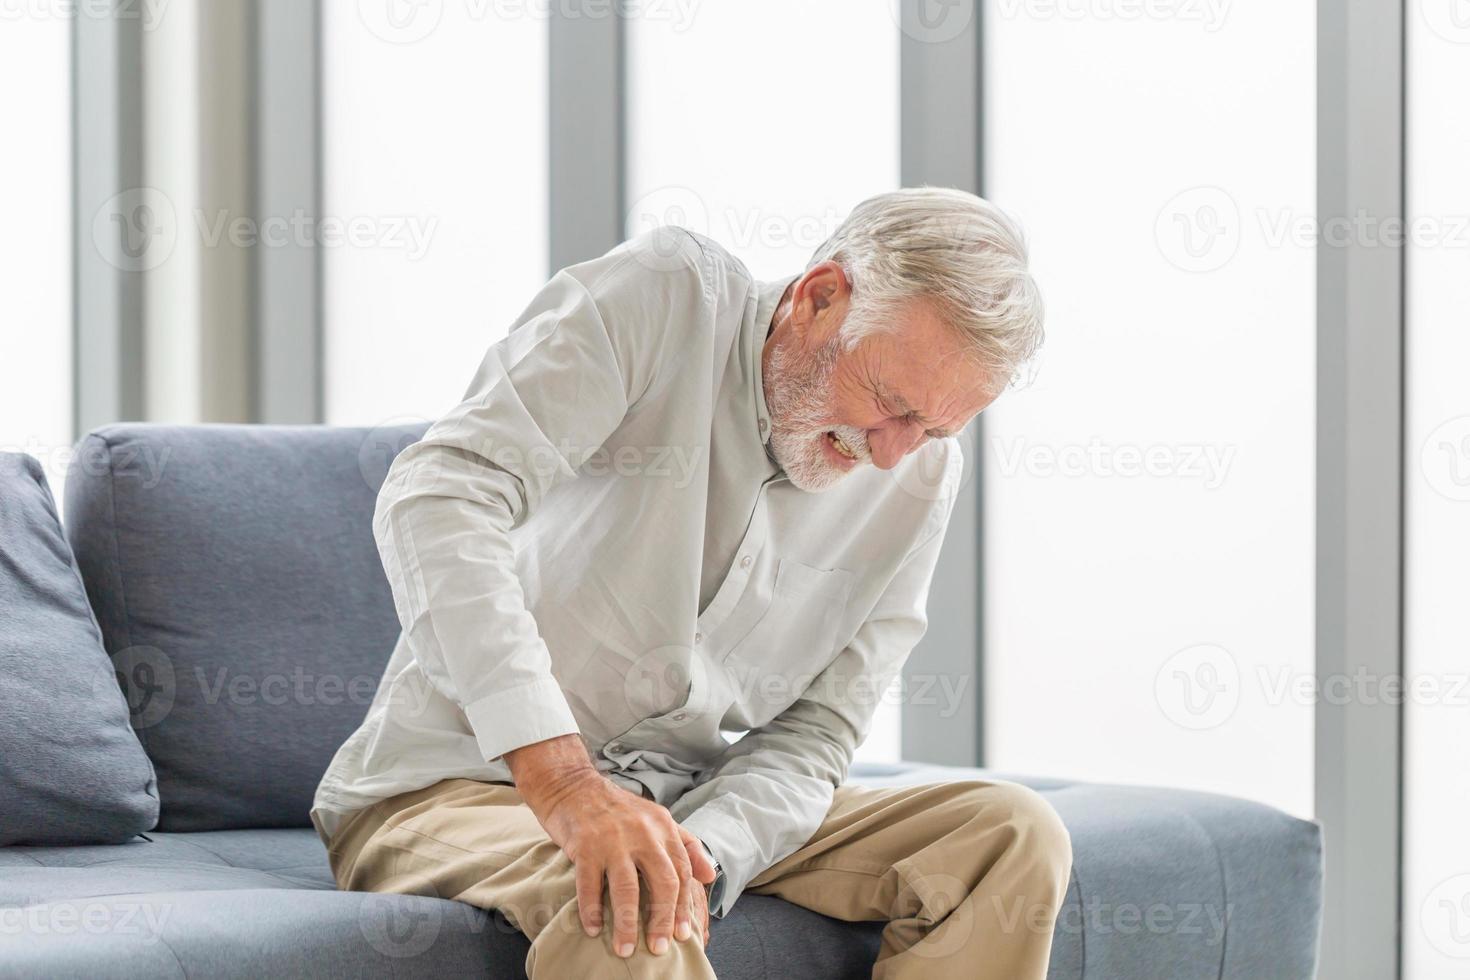 velho que sofre de dor no joelho sentado no sofá na sala de estar, homem idoso que sofre de dor no joelho enquanto está sentado no sofá foto